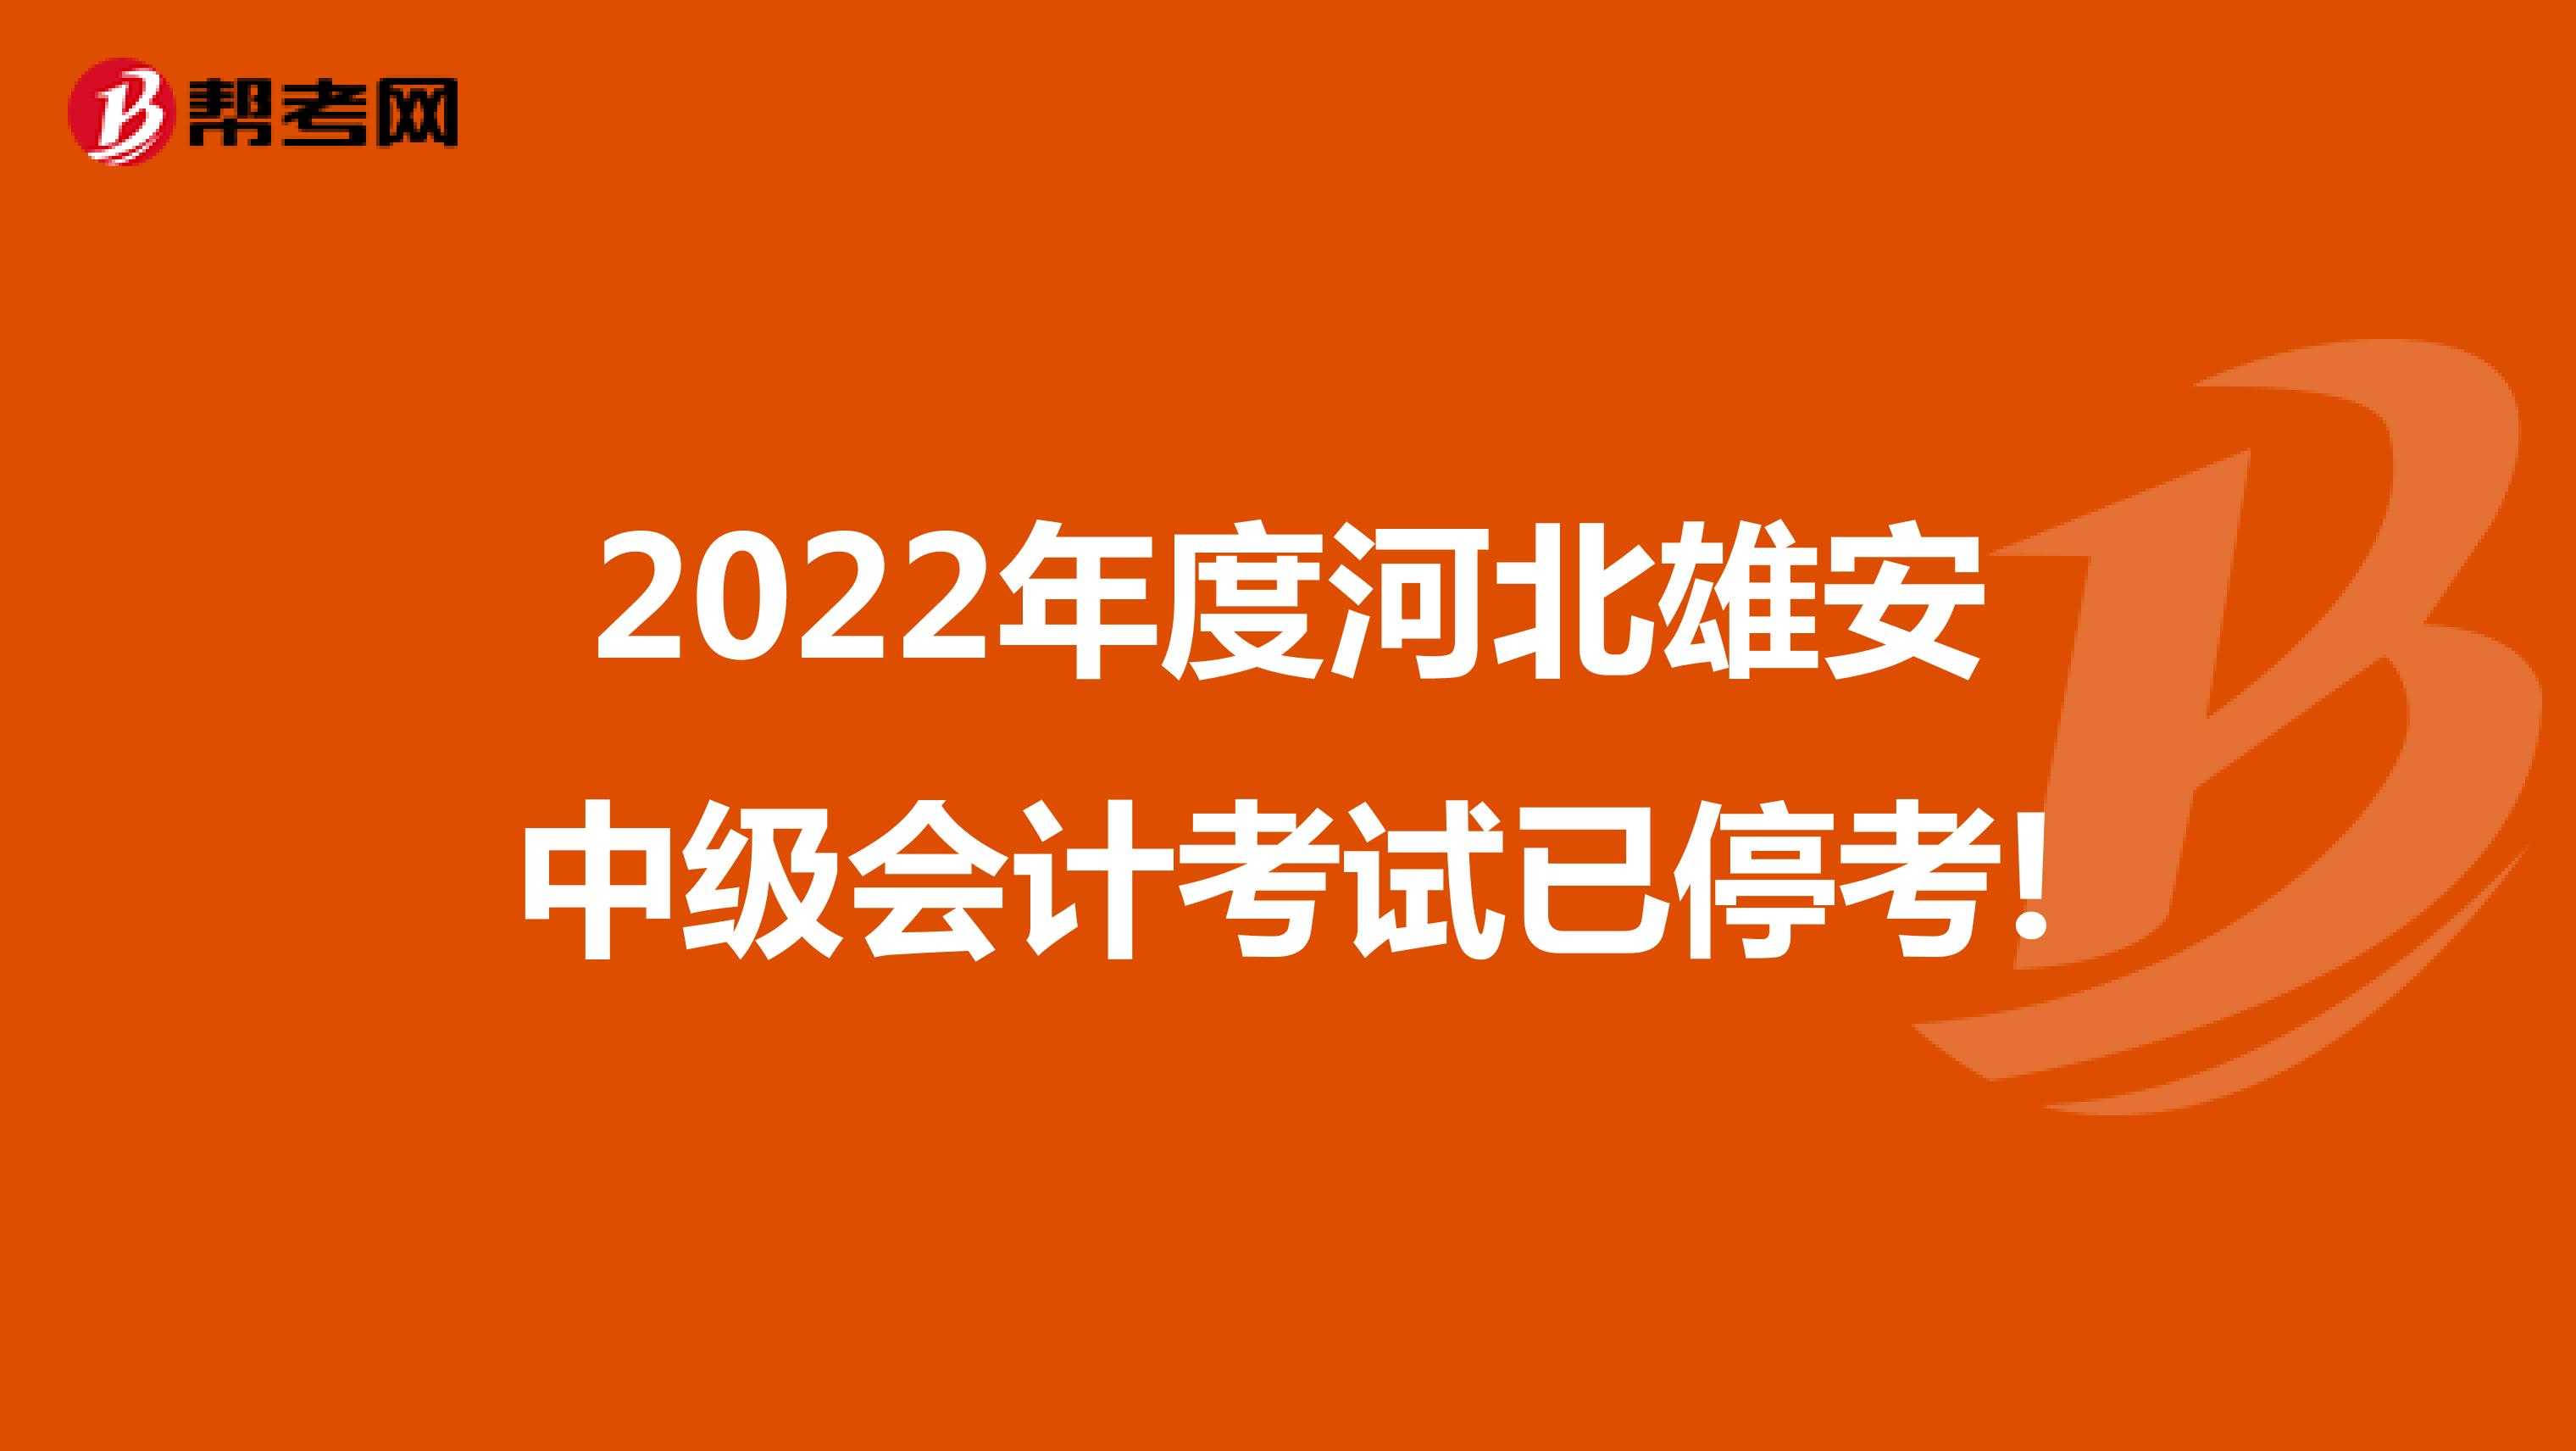 2022年度河北雄安中级会计考试已停考!